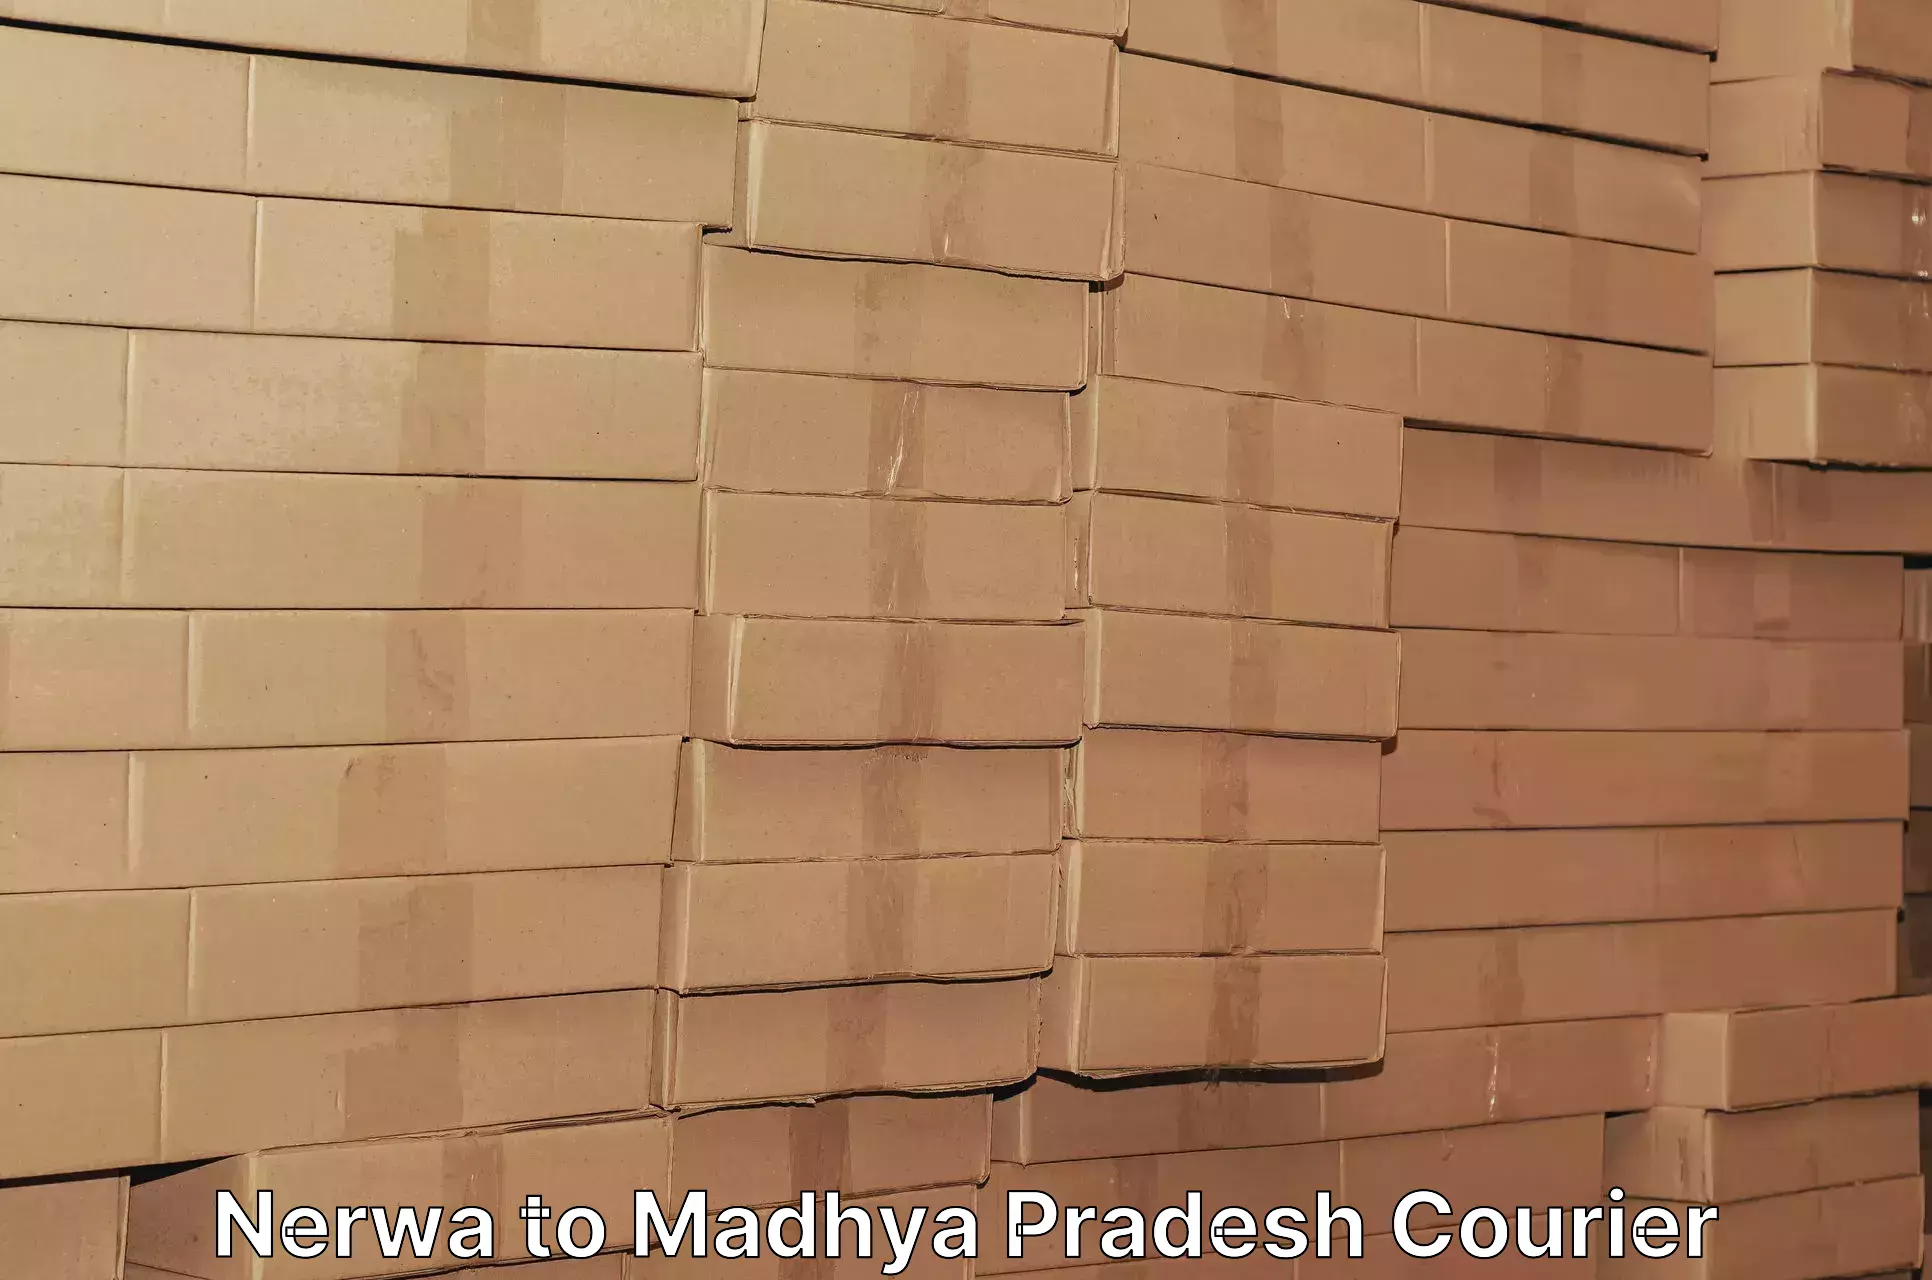 Enhanced tracking features Nerwa to Madhya Pradesh